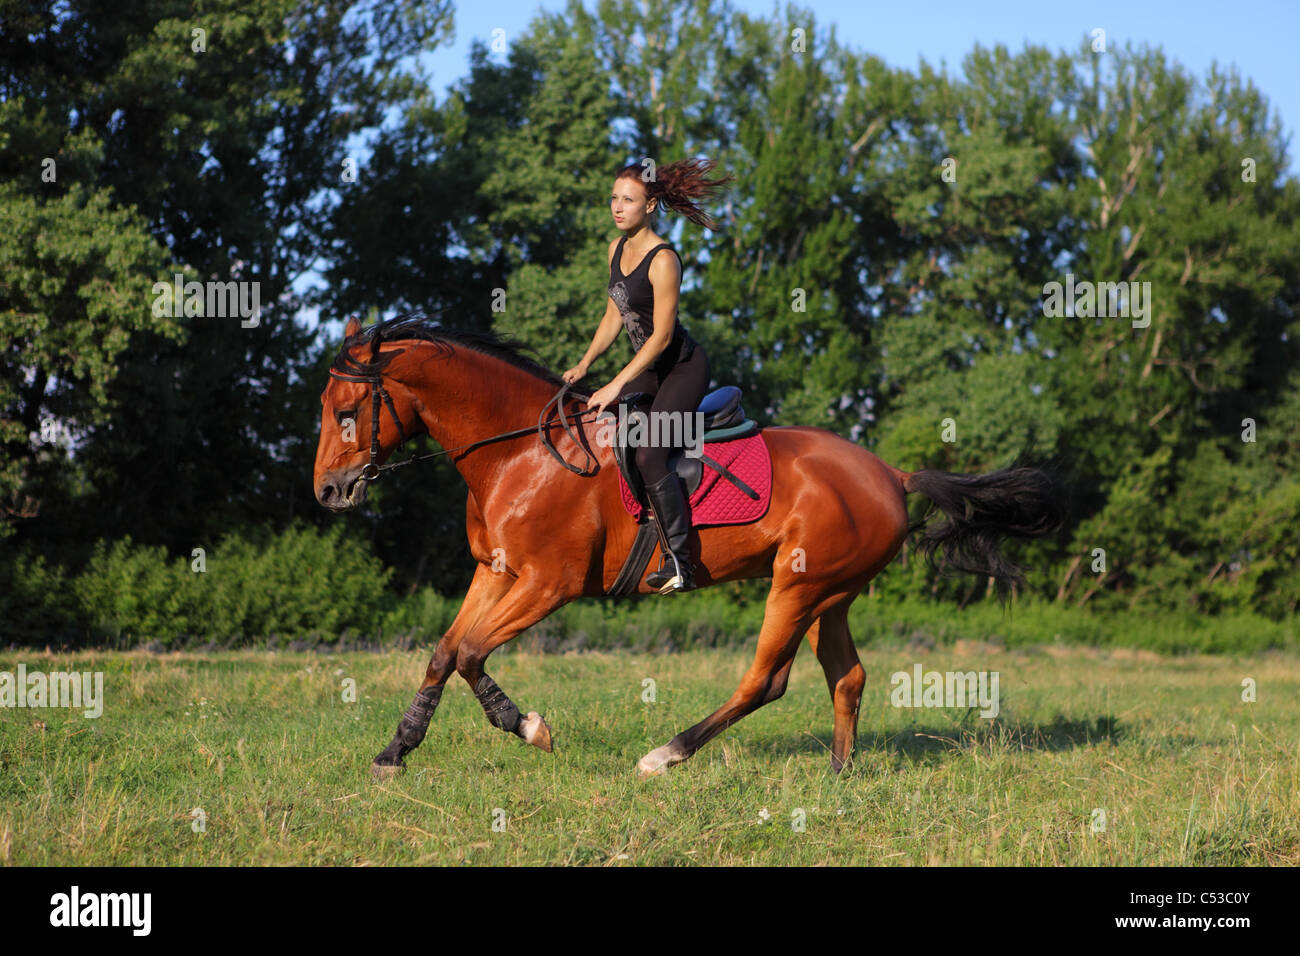 Rider and horse. Mensch auf Pferd Stock Photo